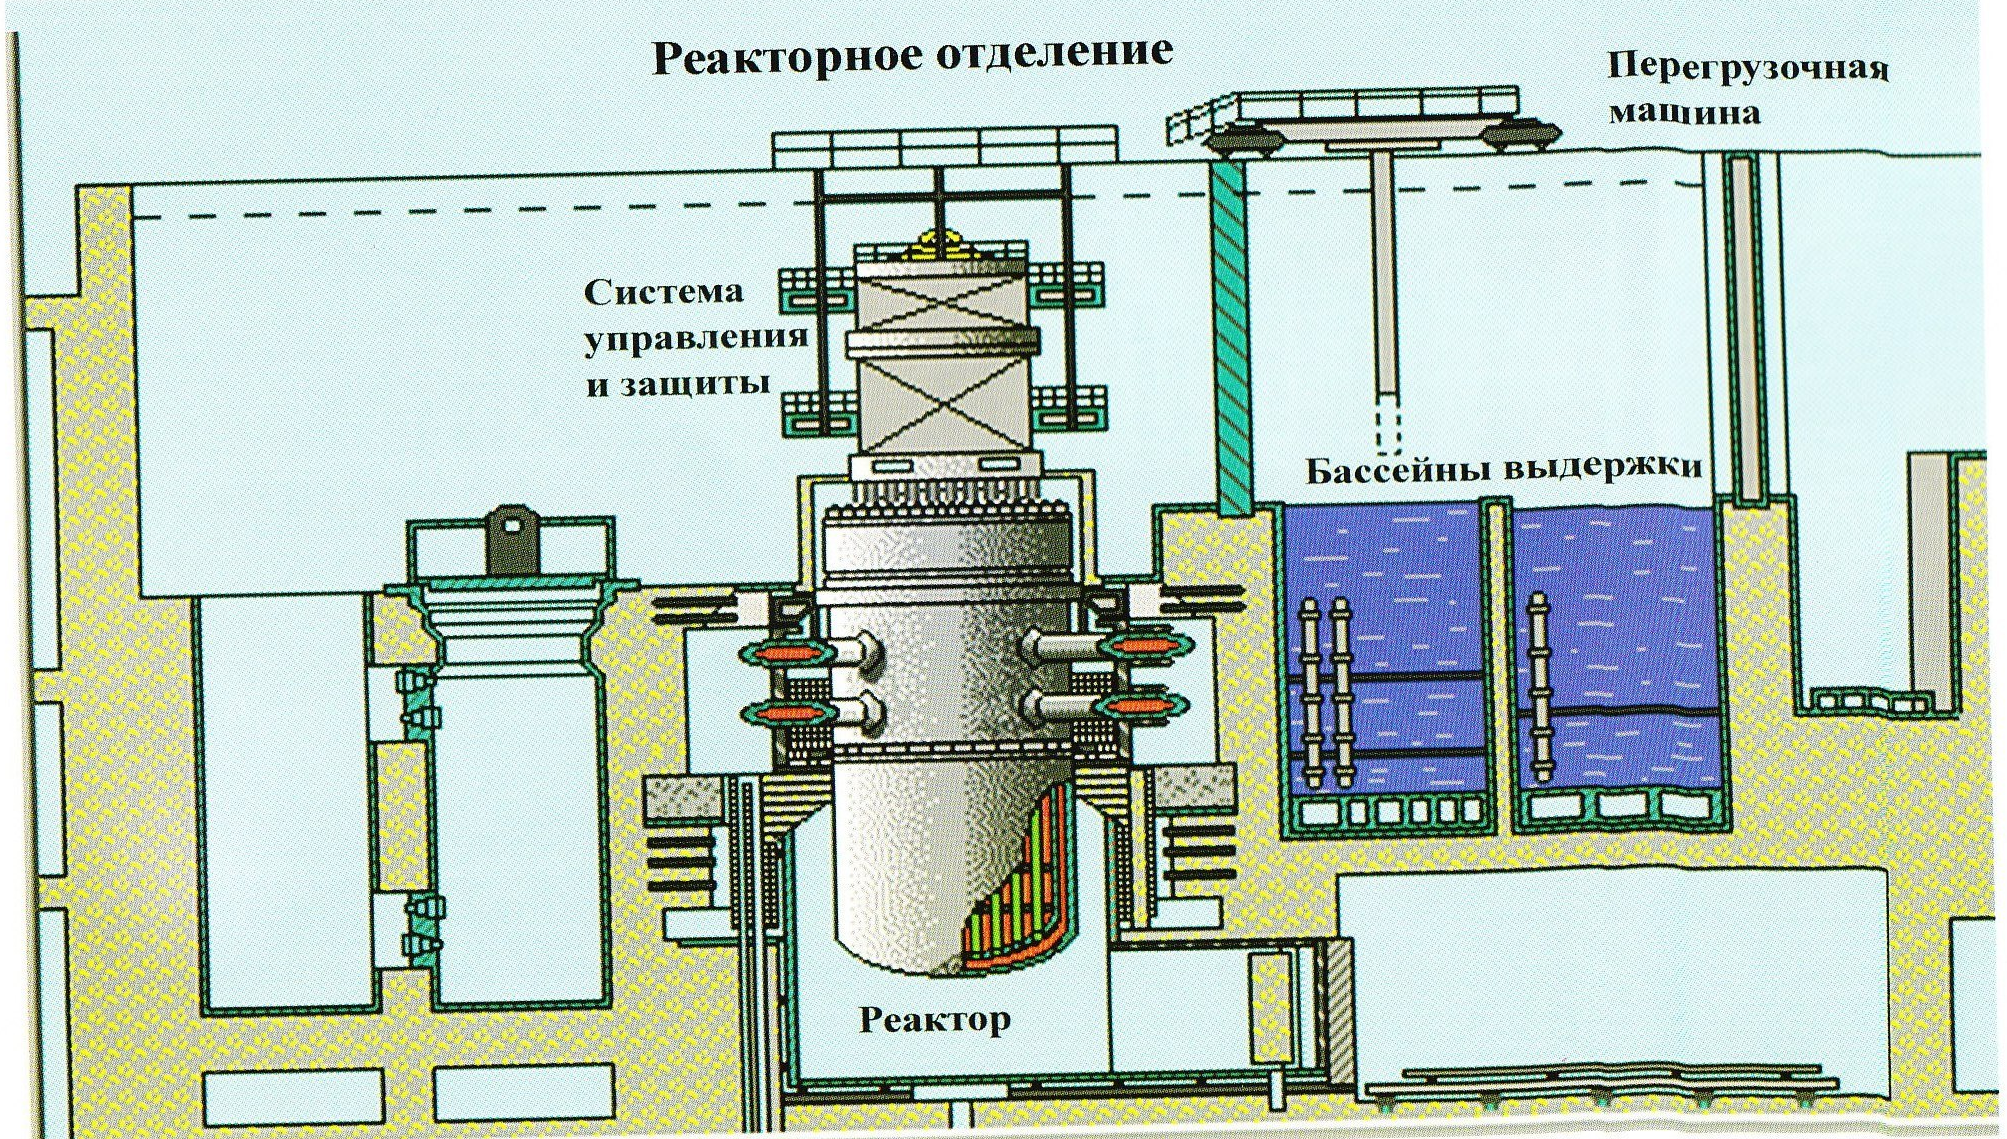 Машина аэс. Ядерный реактор ВВЭР-1000. Перегрузочная машина ВВЭР-1200. Бассейн выдержки ВВЭР 1000. Перегрузочная машина реактора ВВЭР-1000.